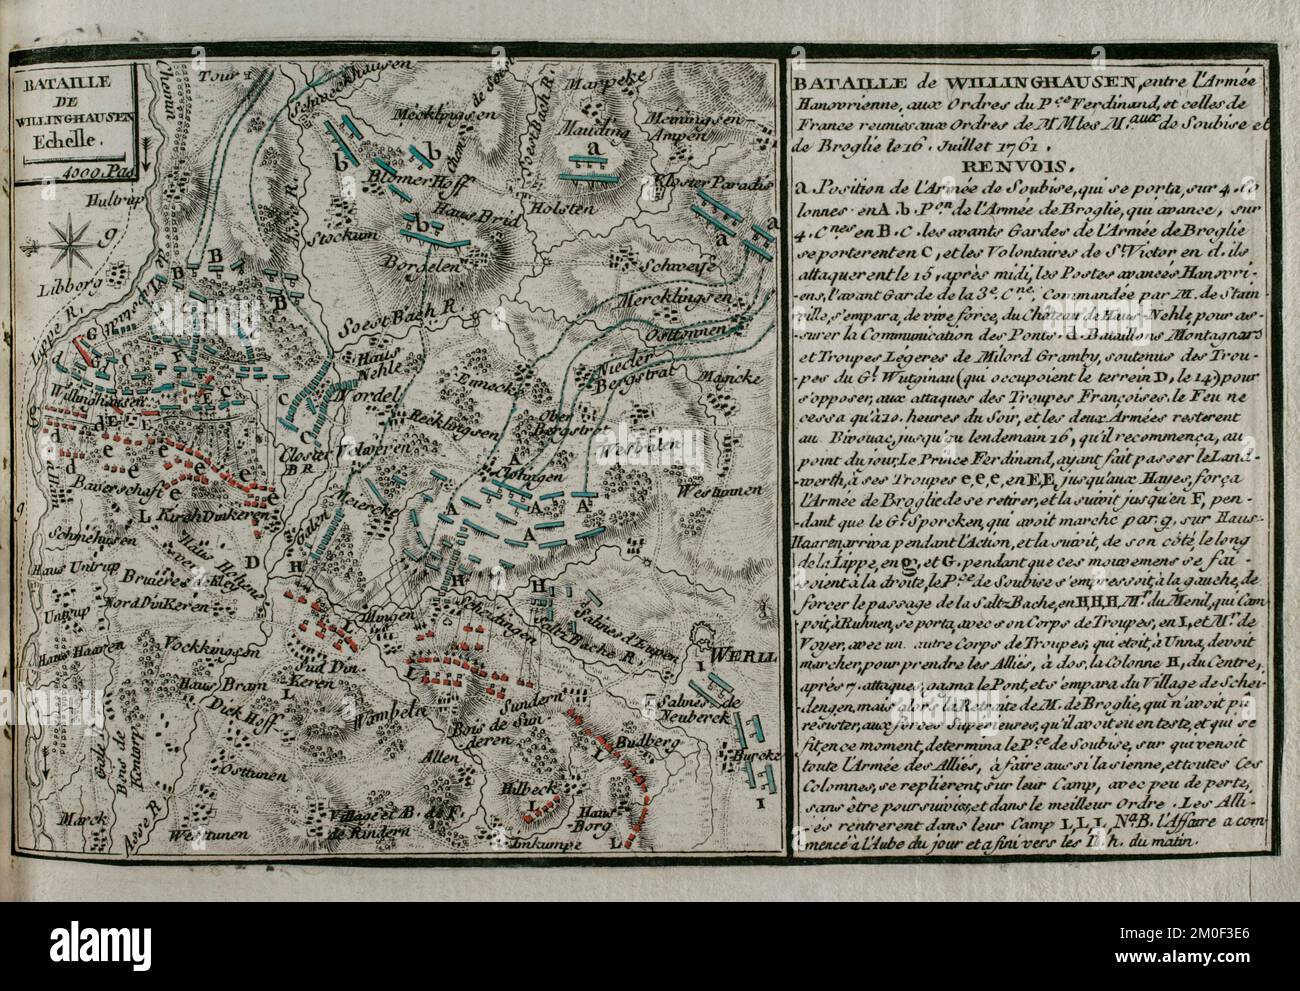 Guerre de sept ans (1756-1763). Carte de la bataille de Vellinghausen (15-16 juillet 1761). Elle a eu lieu sur les rives de la Lippe, dans le nord-ouest de l'Allemagne. Affronta l'armée russe-hanoverienne-britannique alliée dirigée par le prince Ferdinand de Brunswick contre l'armée française sous le commandement du duc de Broglie et du prince Soubise. La force française a dû se retirer. Publié en 1765 par le cartographe Jean de Beaurain (1696-1771) comme illustration de sa Grande carte d'Allemagne, avec les événements qui ont eu lieu pendant la guerre de sept ans. Armée alliée en rouge et armée française en bleu. Décapage et Banque D'Images